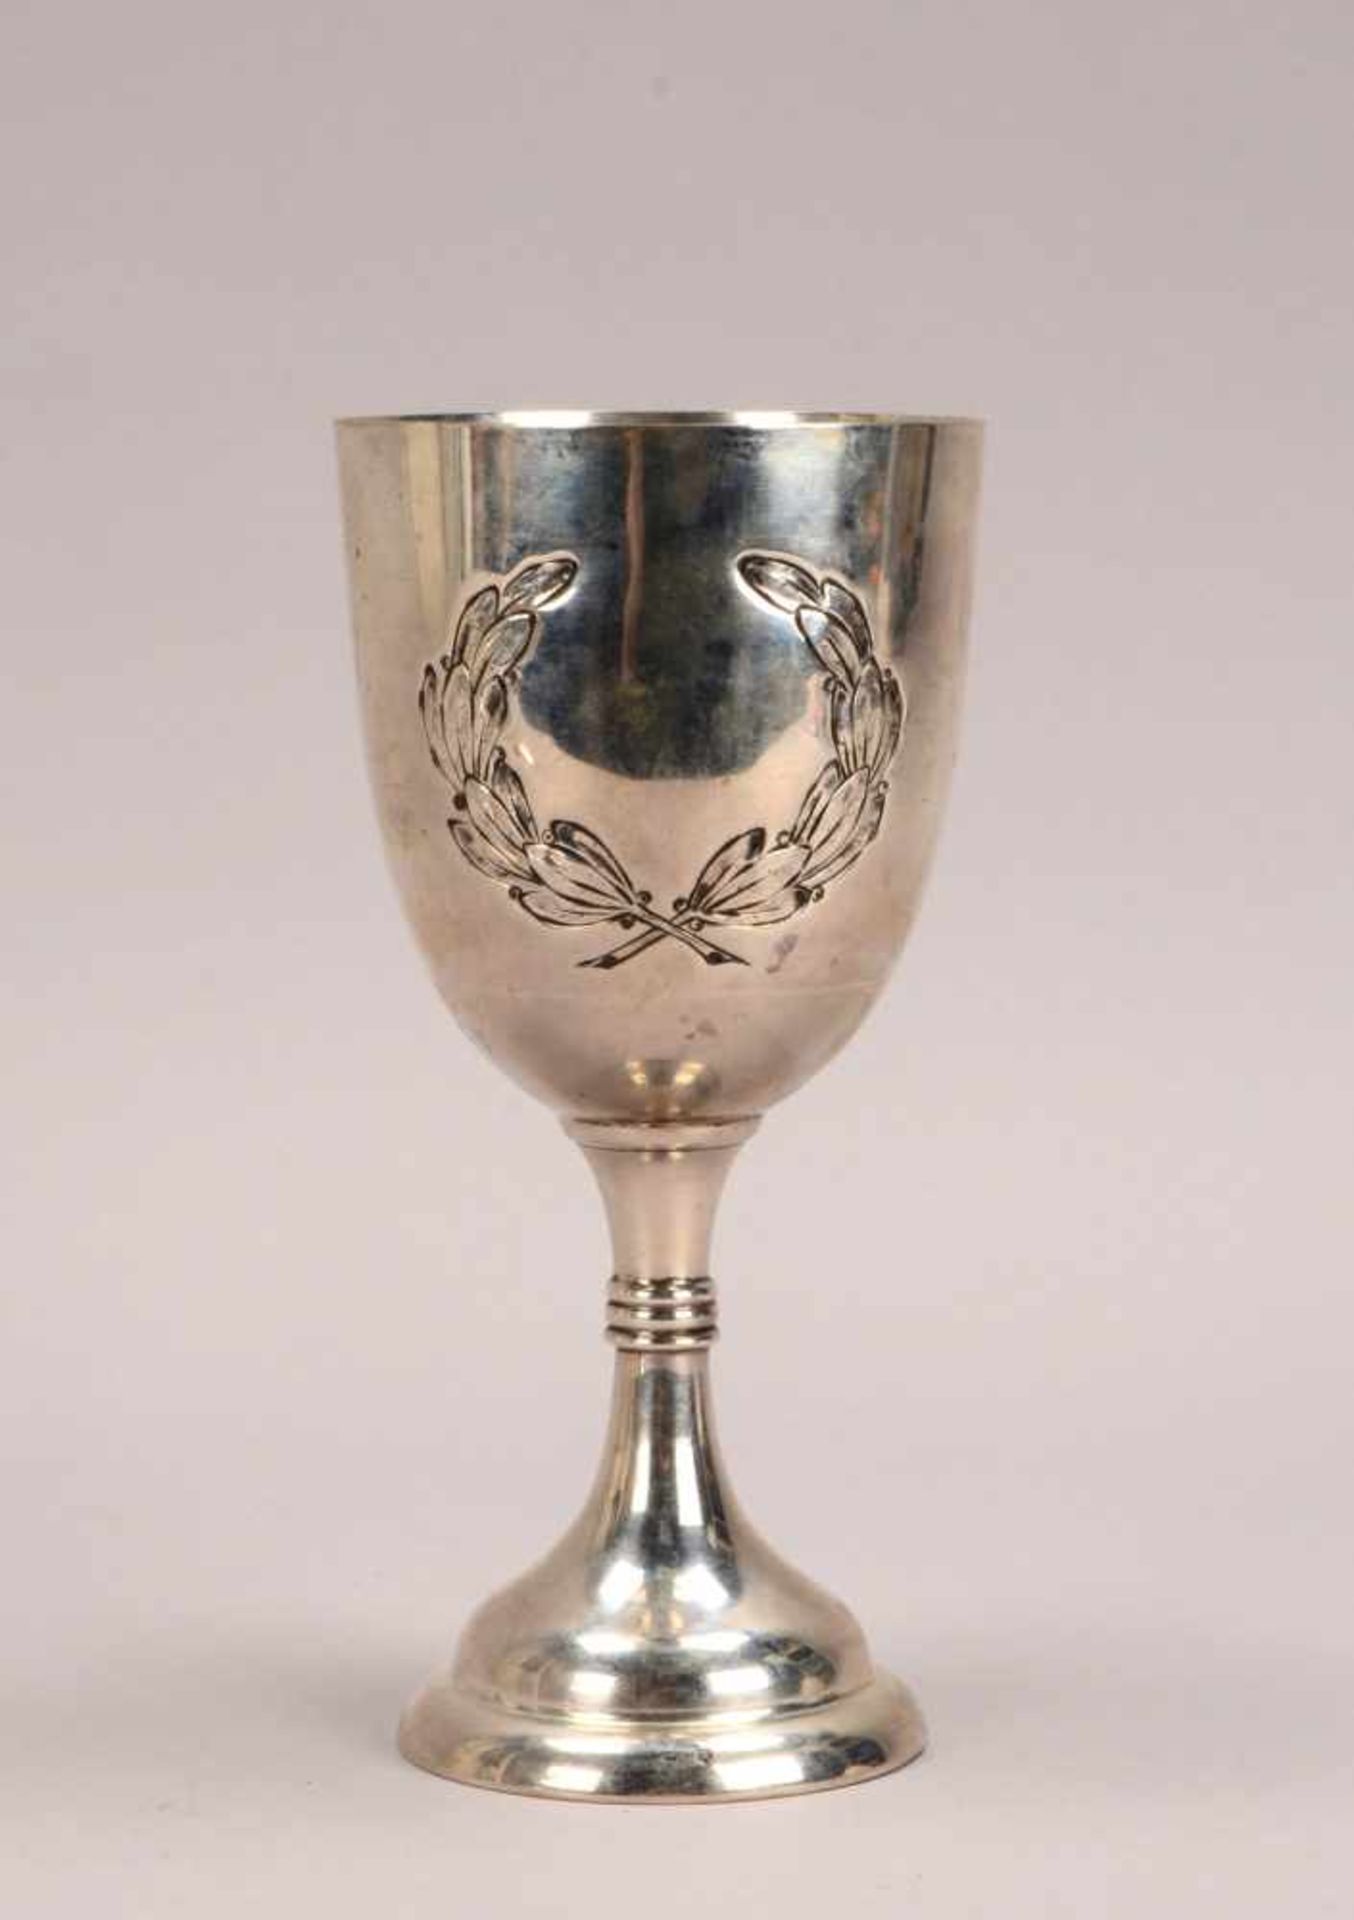 Pokal (Österreich), Silber, schauseitig mit reliefiertem Blattdekor; Höhe 23 cm, Durchmesser Ø 10,